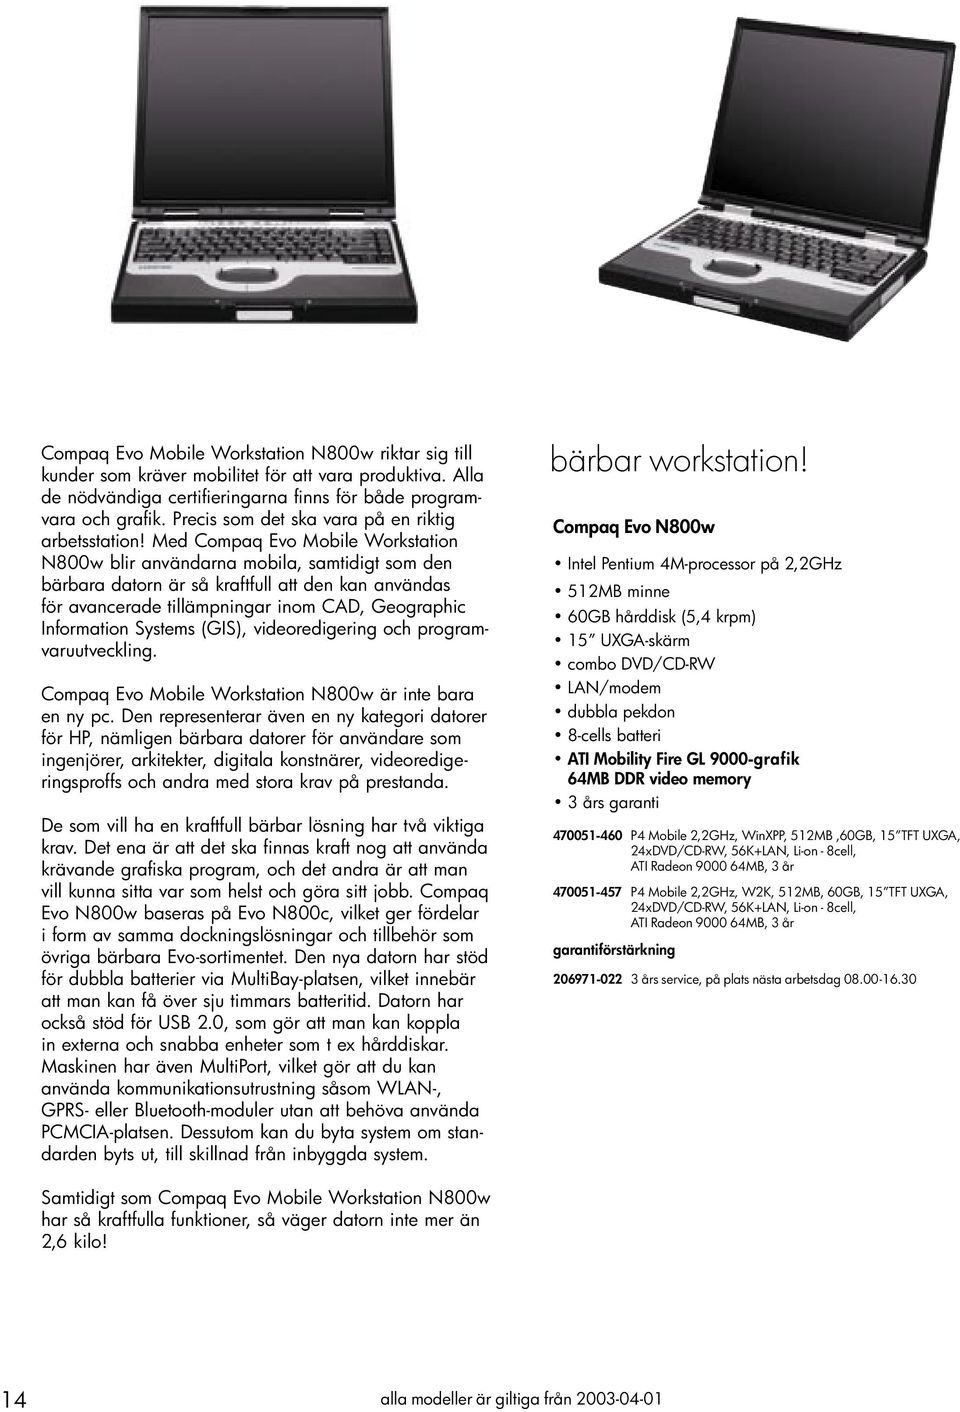 Med Compaq Evo Mobile Workstation N800w blir användarna mobila, samtidigt som den bärbara datorn är så kraftfull att den kan användas för avancerade tillämpningar inom CAD, Geographic Information